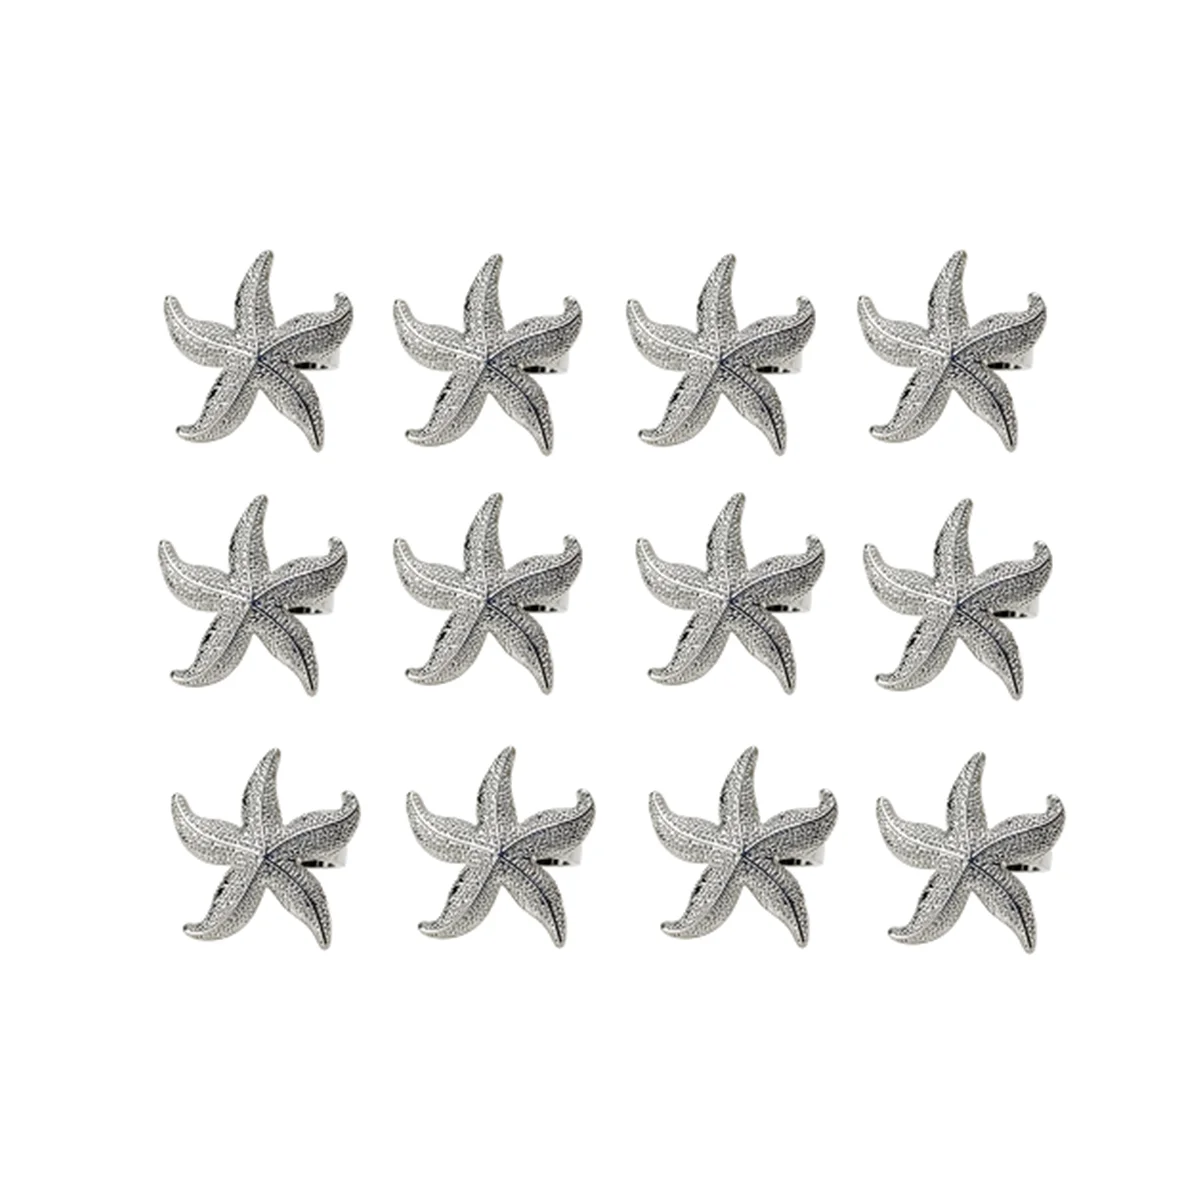 

Кольца для салфеток в виде морской звезды, 12 серебряных украшений для летней свадебной вечеринки, пляжного стола